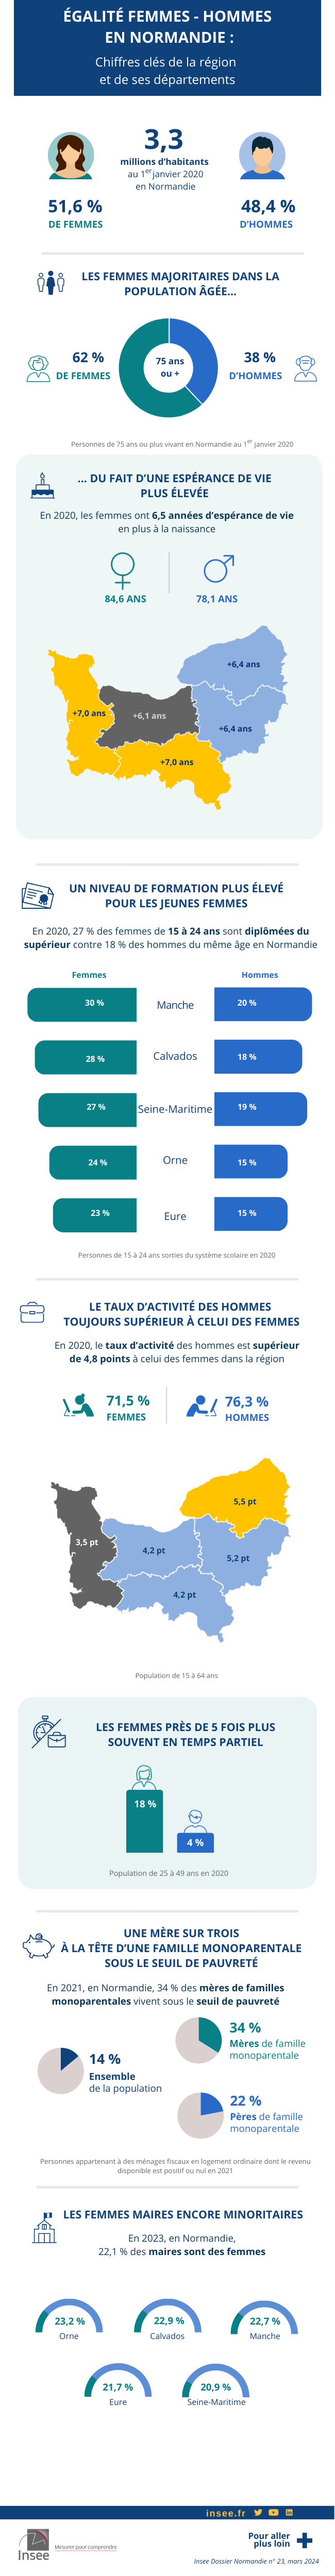 Égalité femmes-hommes : les chiffres clés de la Normandie